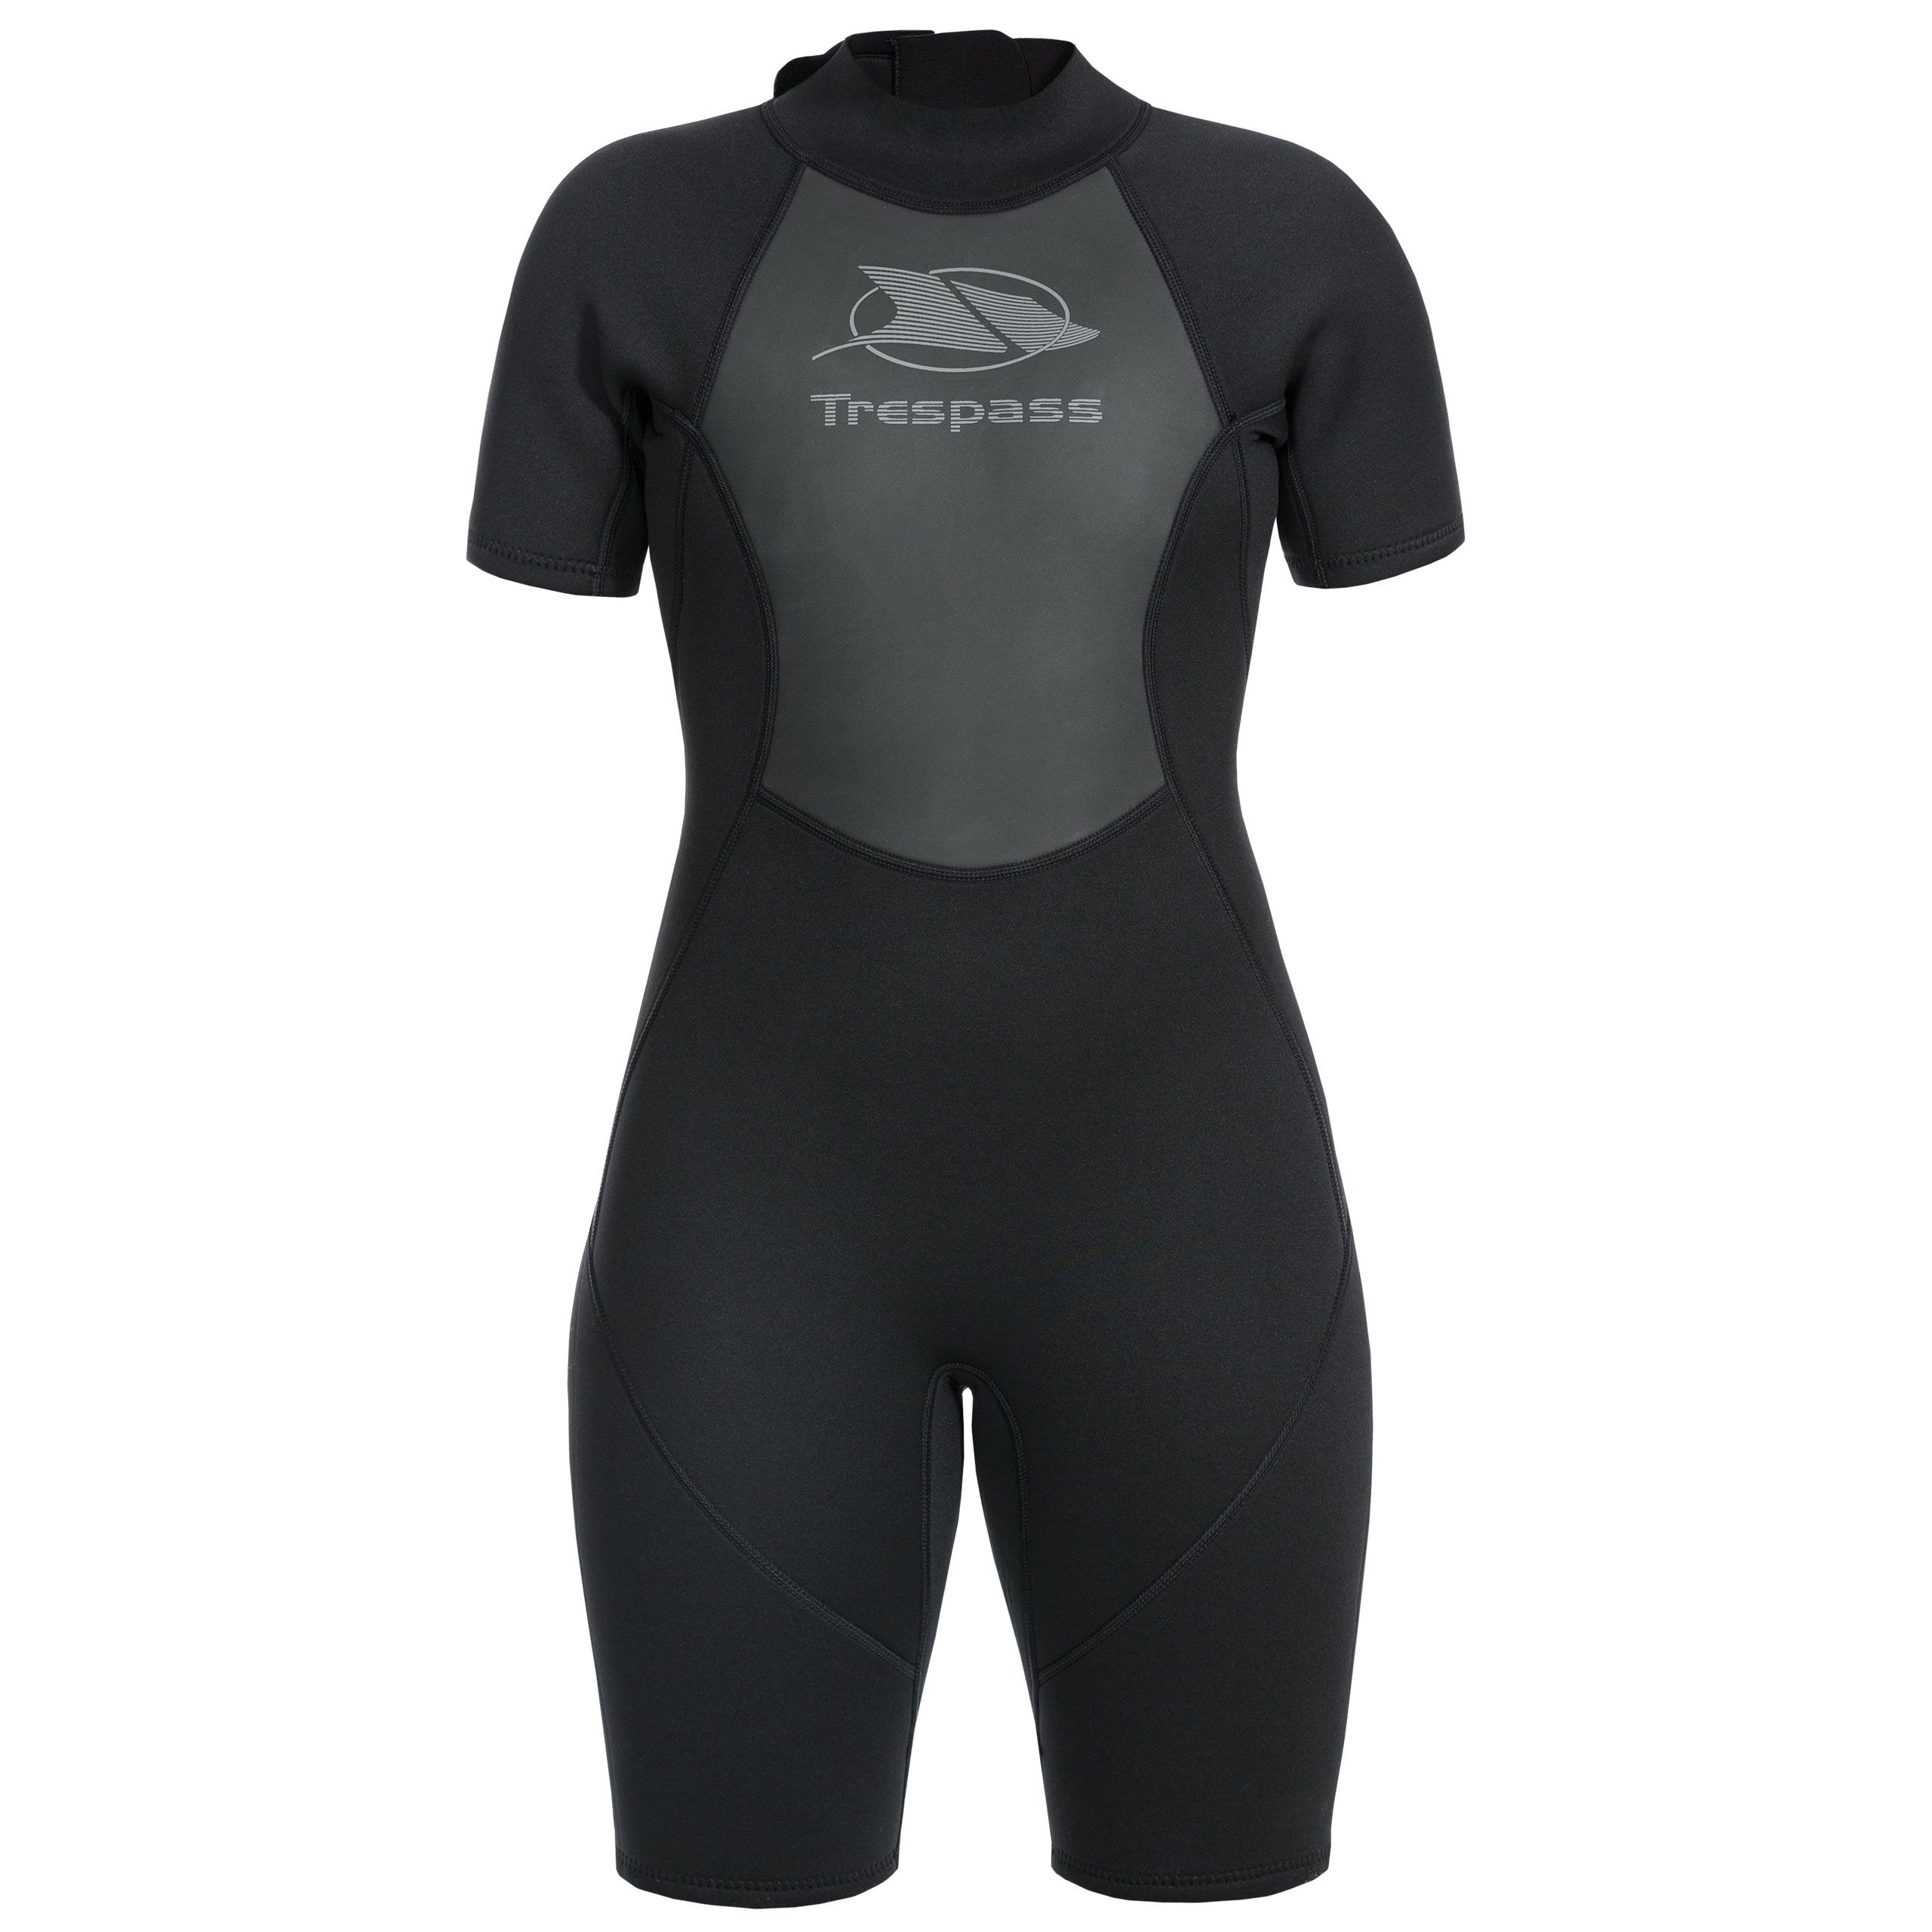 Scubadive Womens 3mm Short Wetsuit